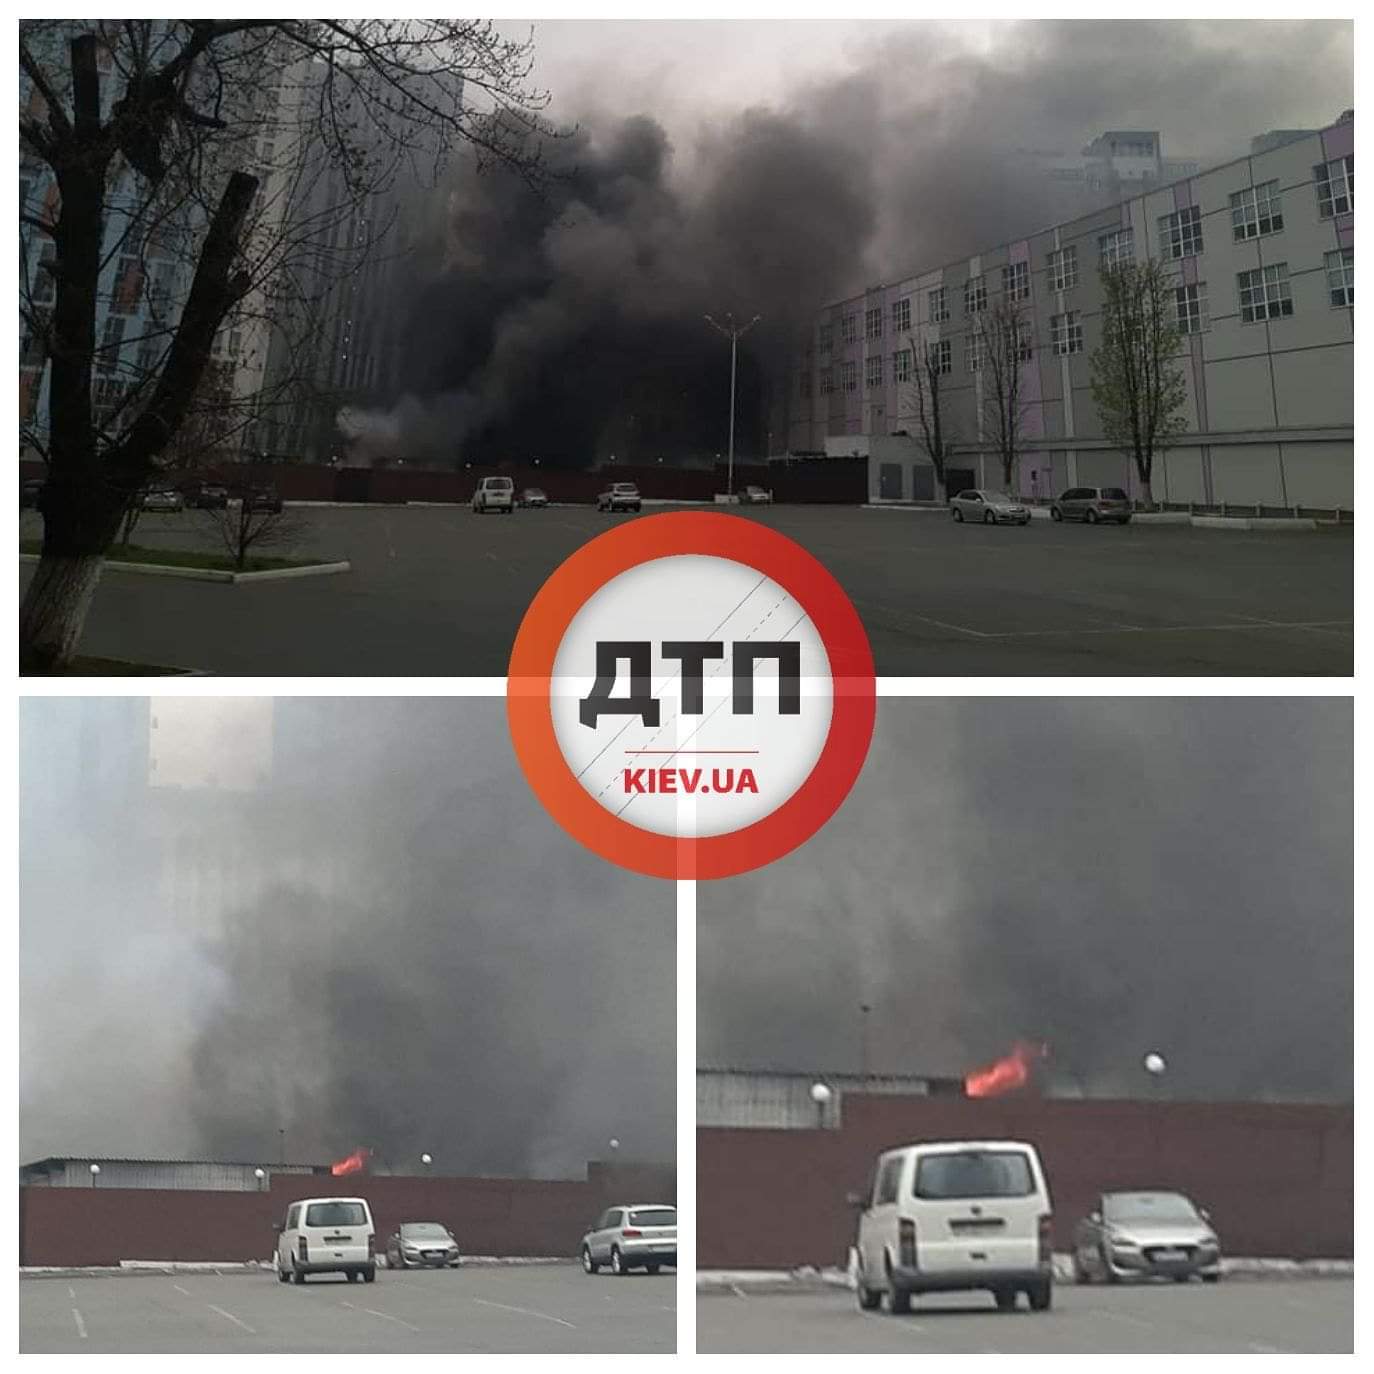 Серьёзный пожар в Киеве, на улице Сурикова: горят хозяйственные помещения Мегамаркета. Видео